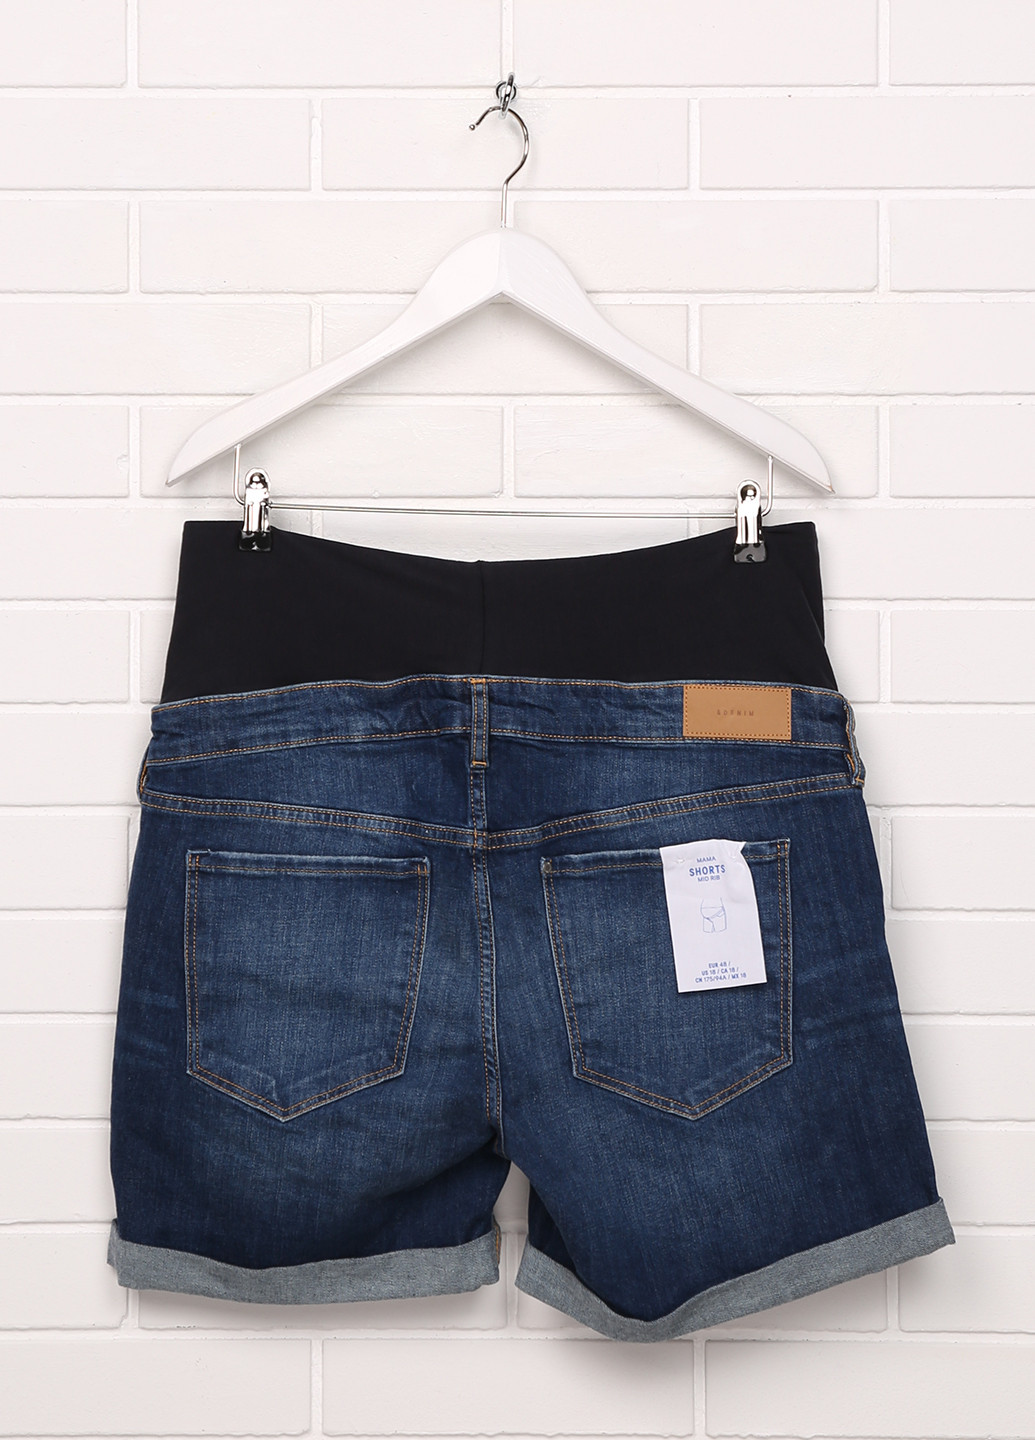 Шорты для беременных H&M однотонные тёмно-синие джинсовые